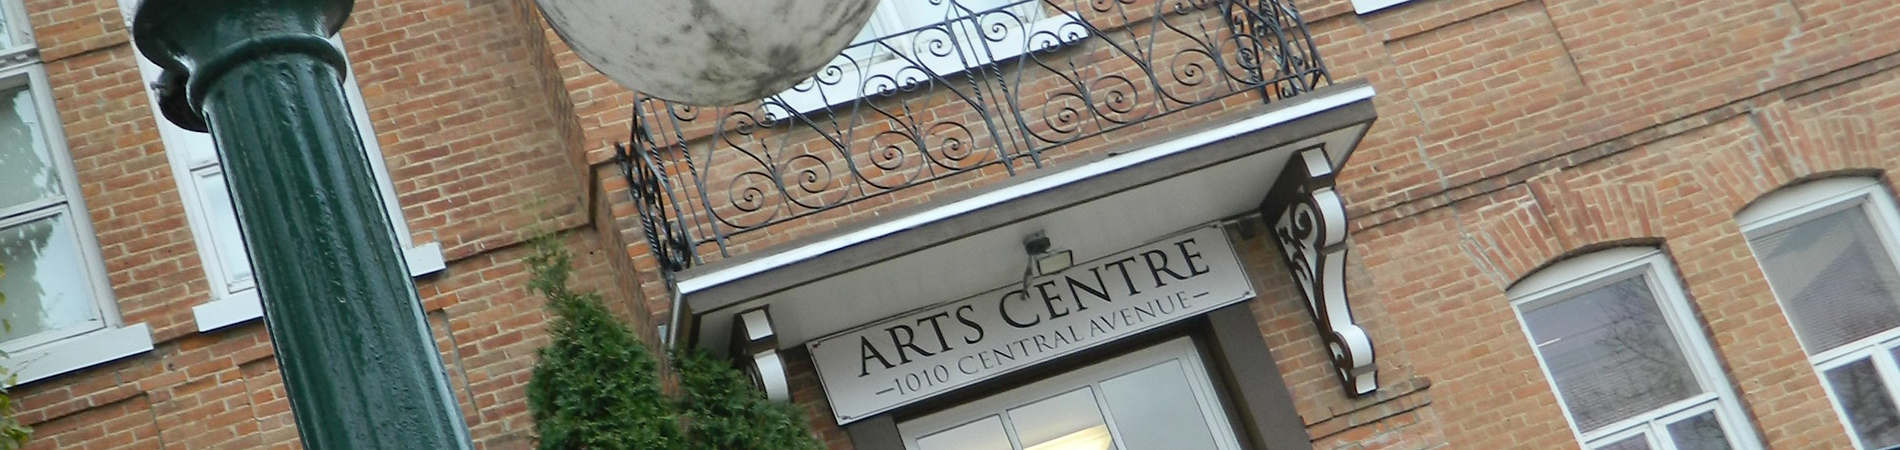 arts centre downtown